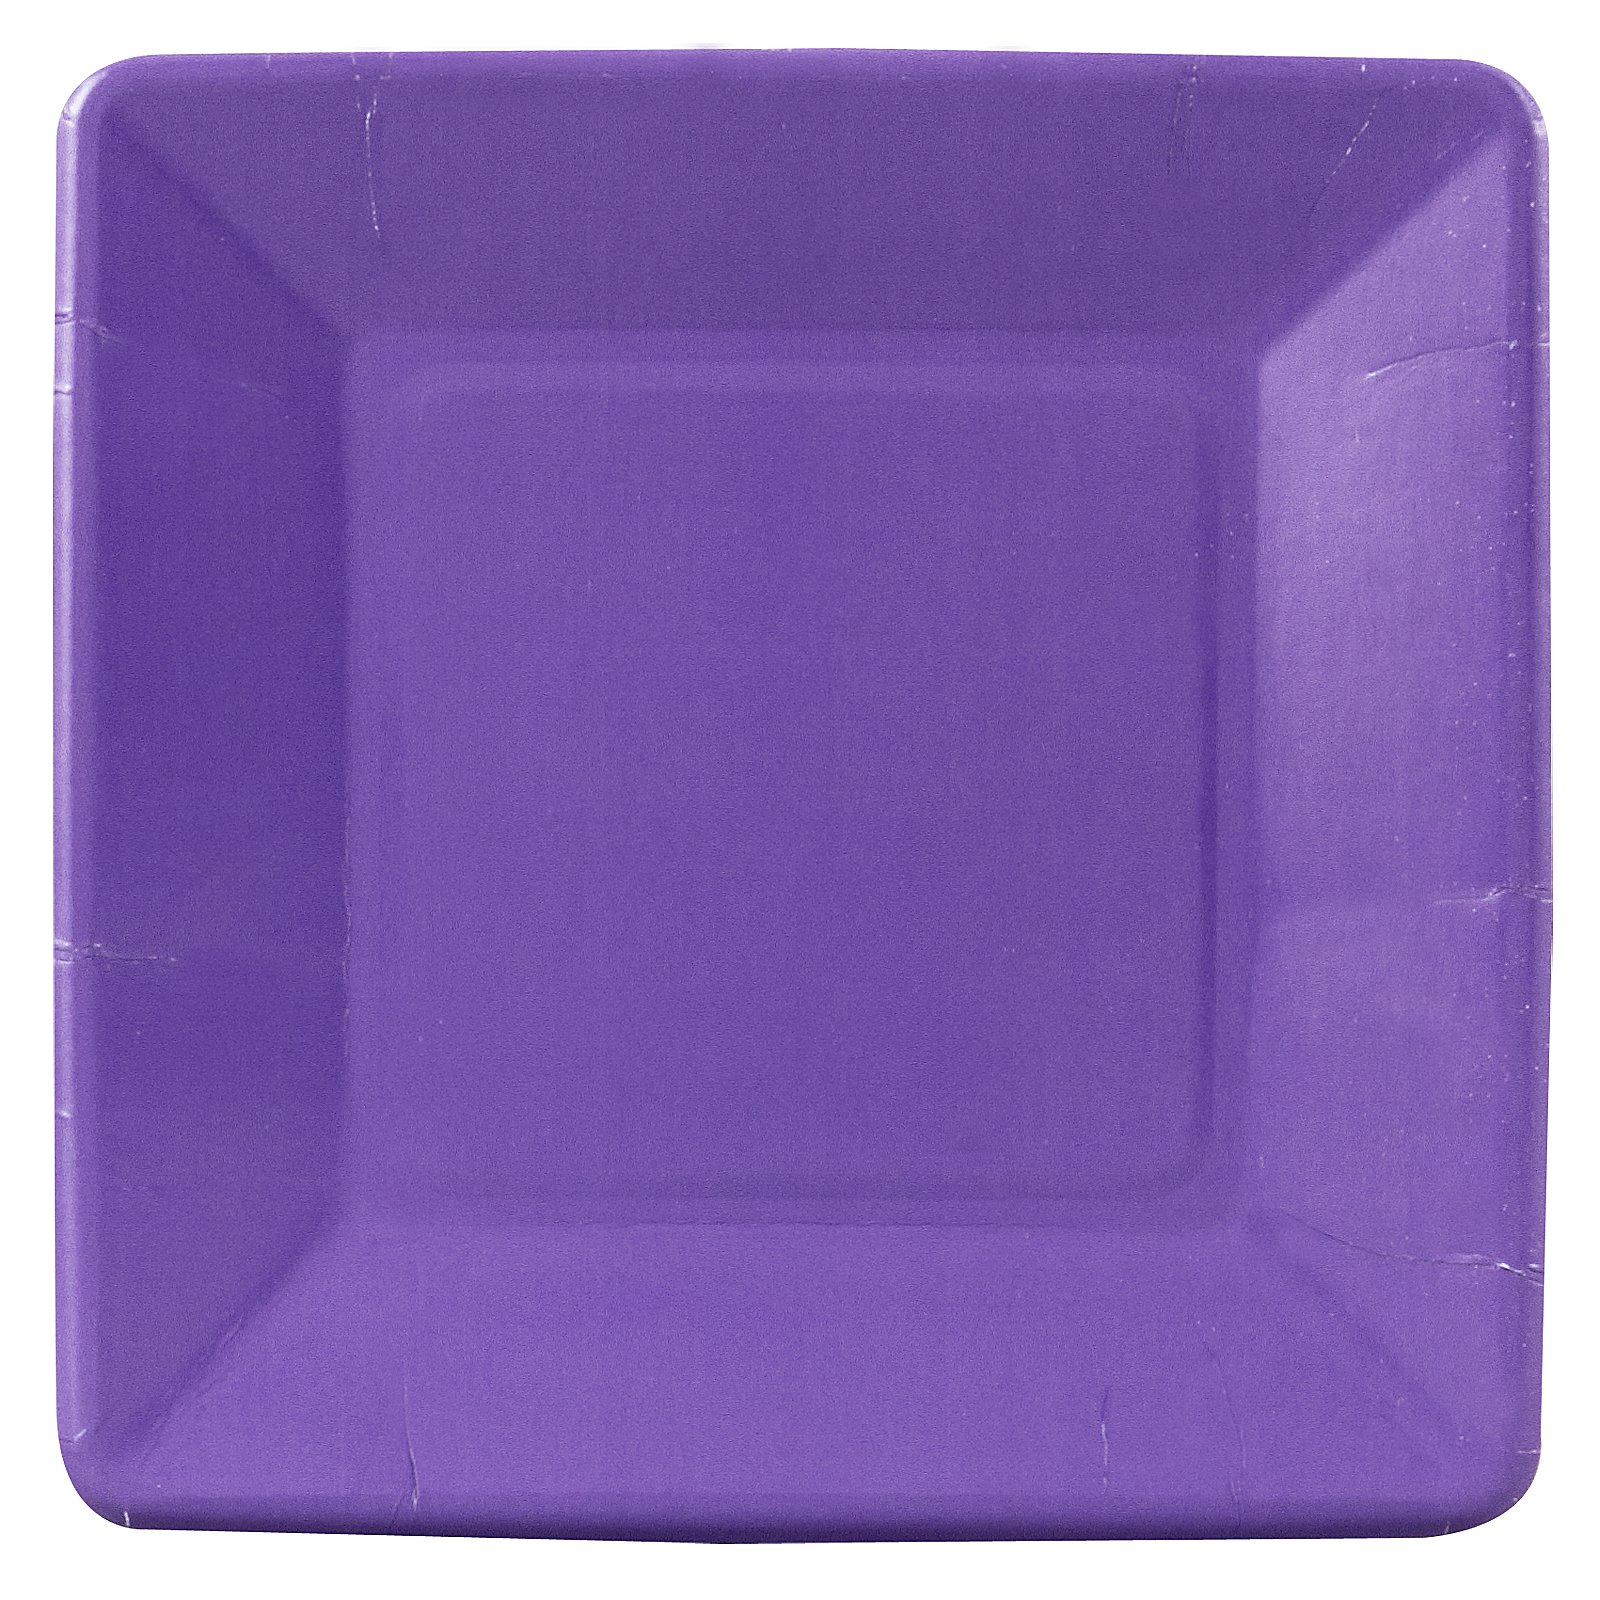 Perfect Purple (Purple) Square Dessert Plates (18 count) - Click Image to Close